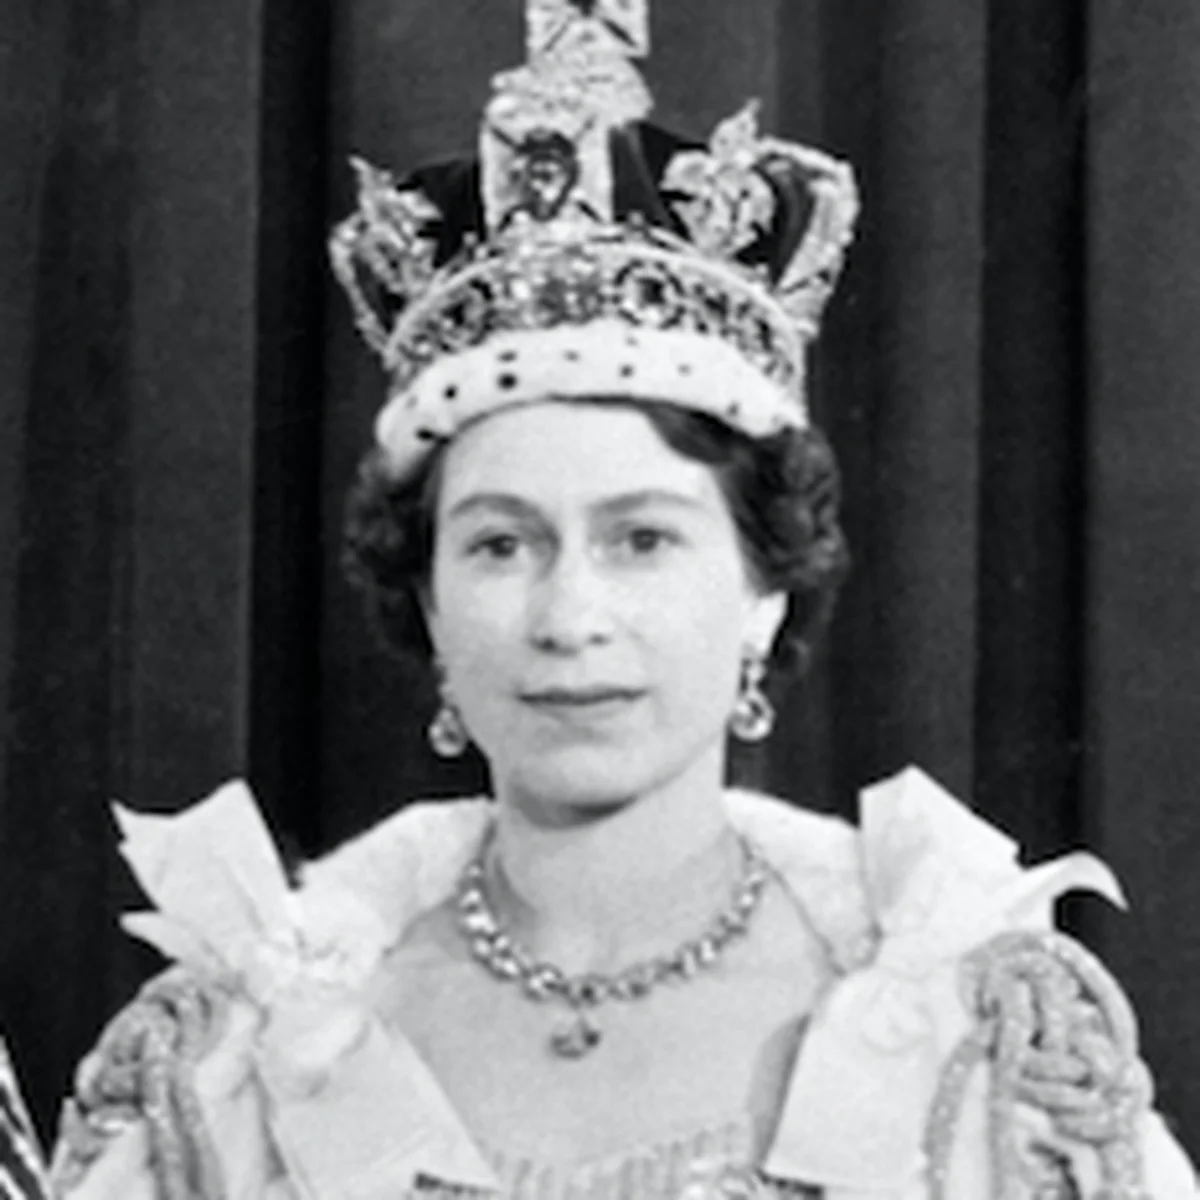 エリザベス女王96年の生涯！ フィリップ殿下との初恋から、王室のスキャンダルまで、当時の写真とともに振り返る